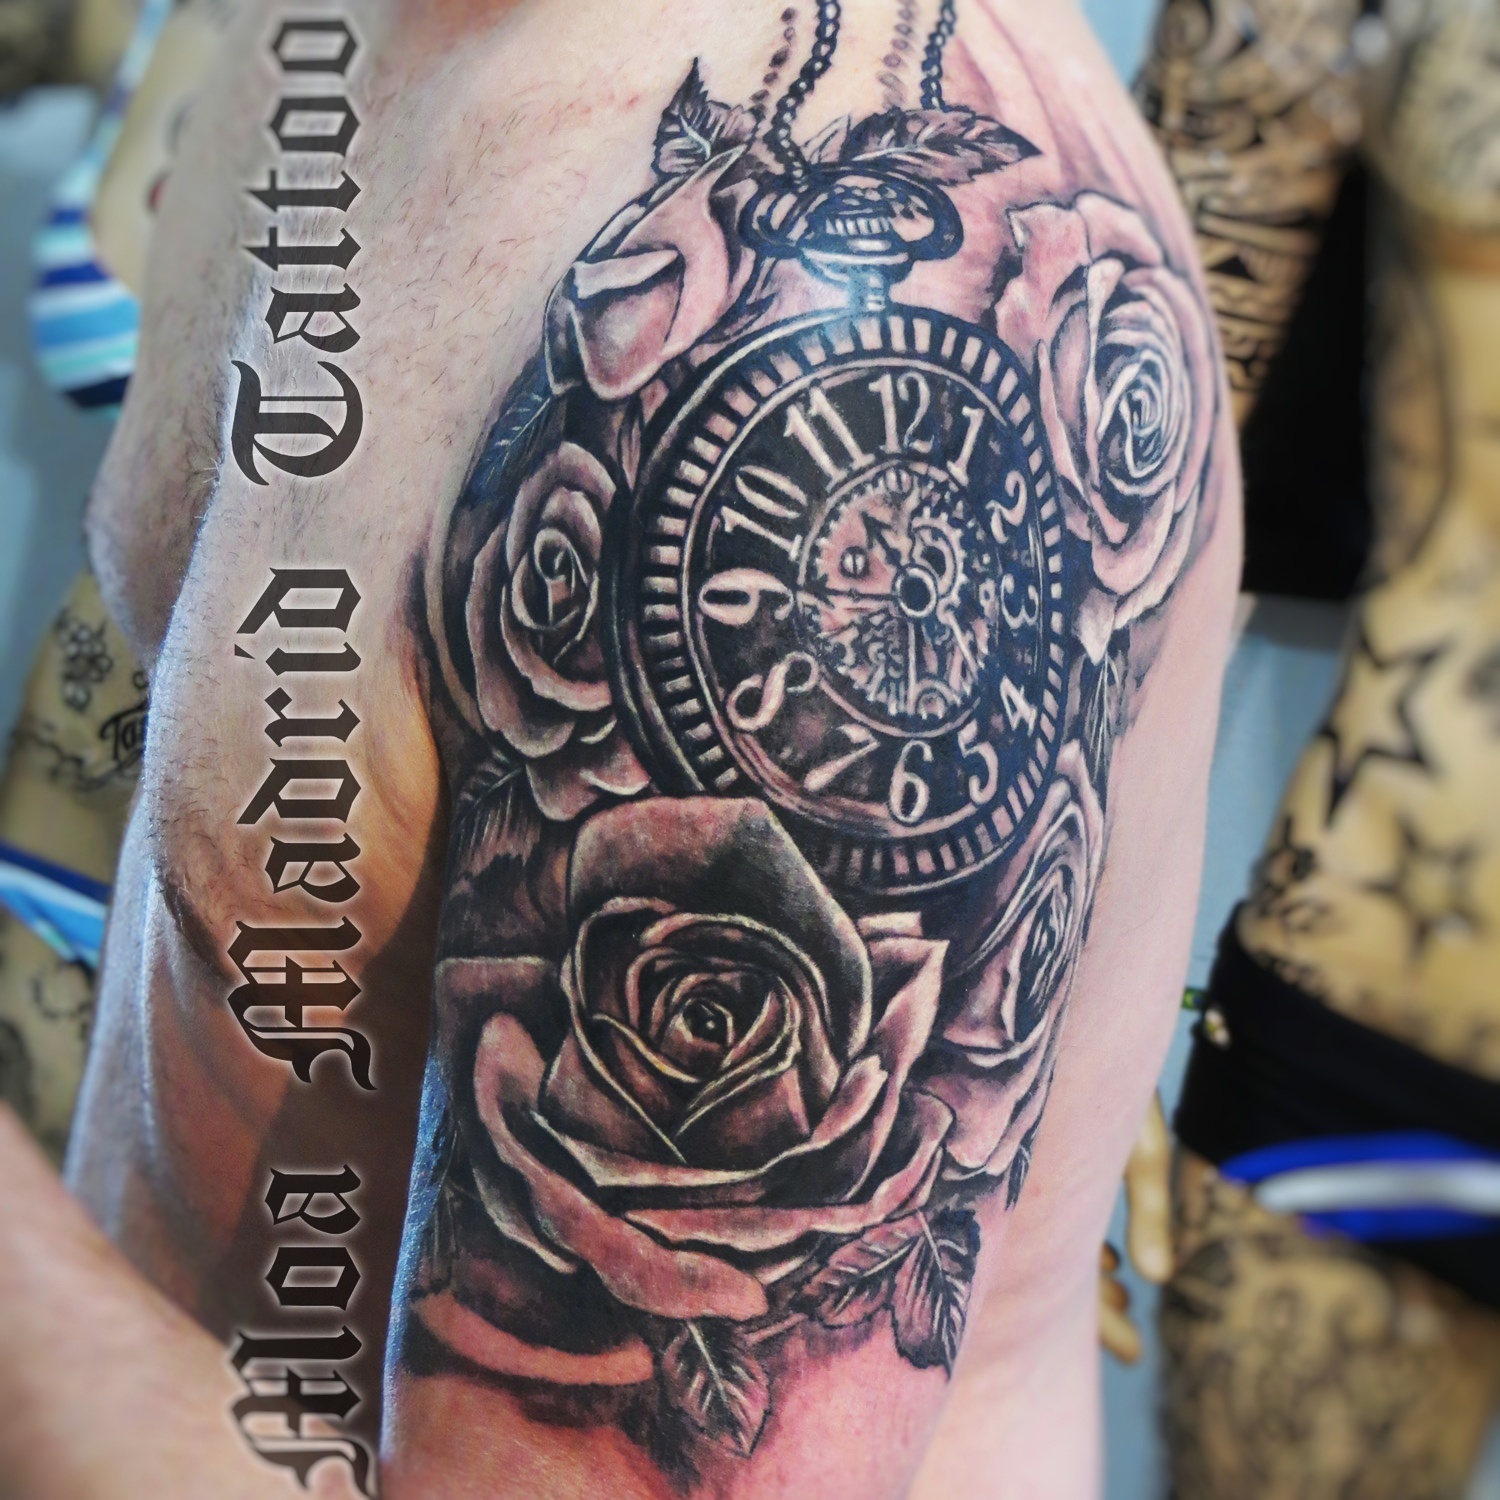 Tatuaje de reloj de bolsillo rodeado de rosas hecho en el brazo